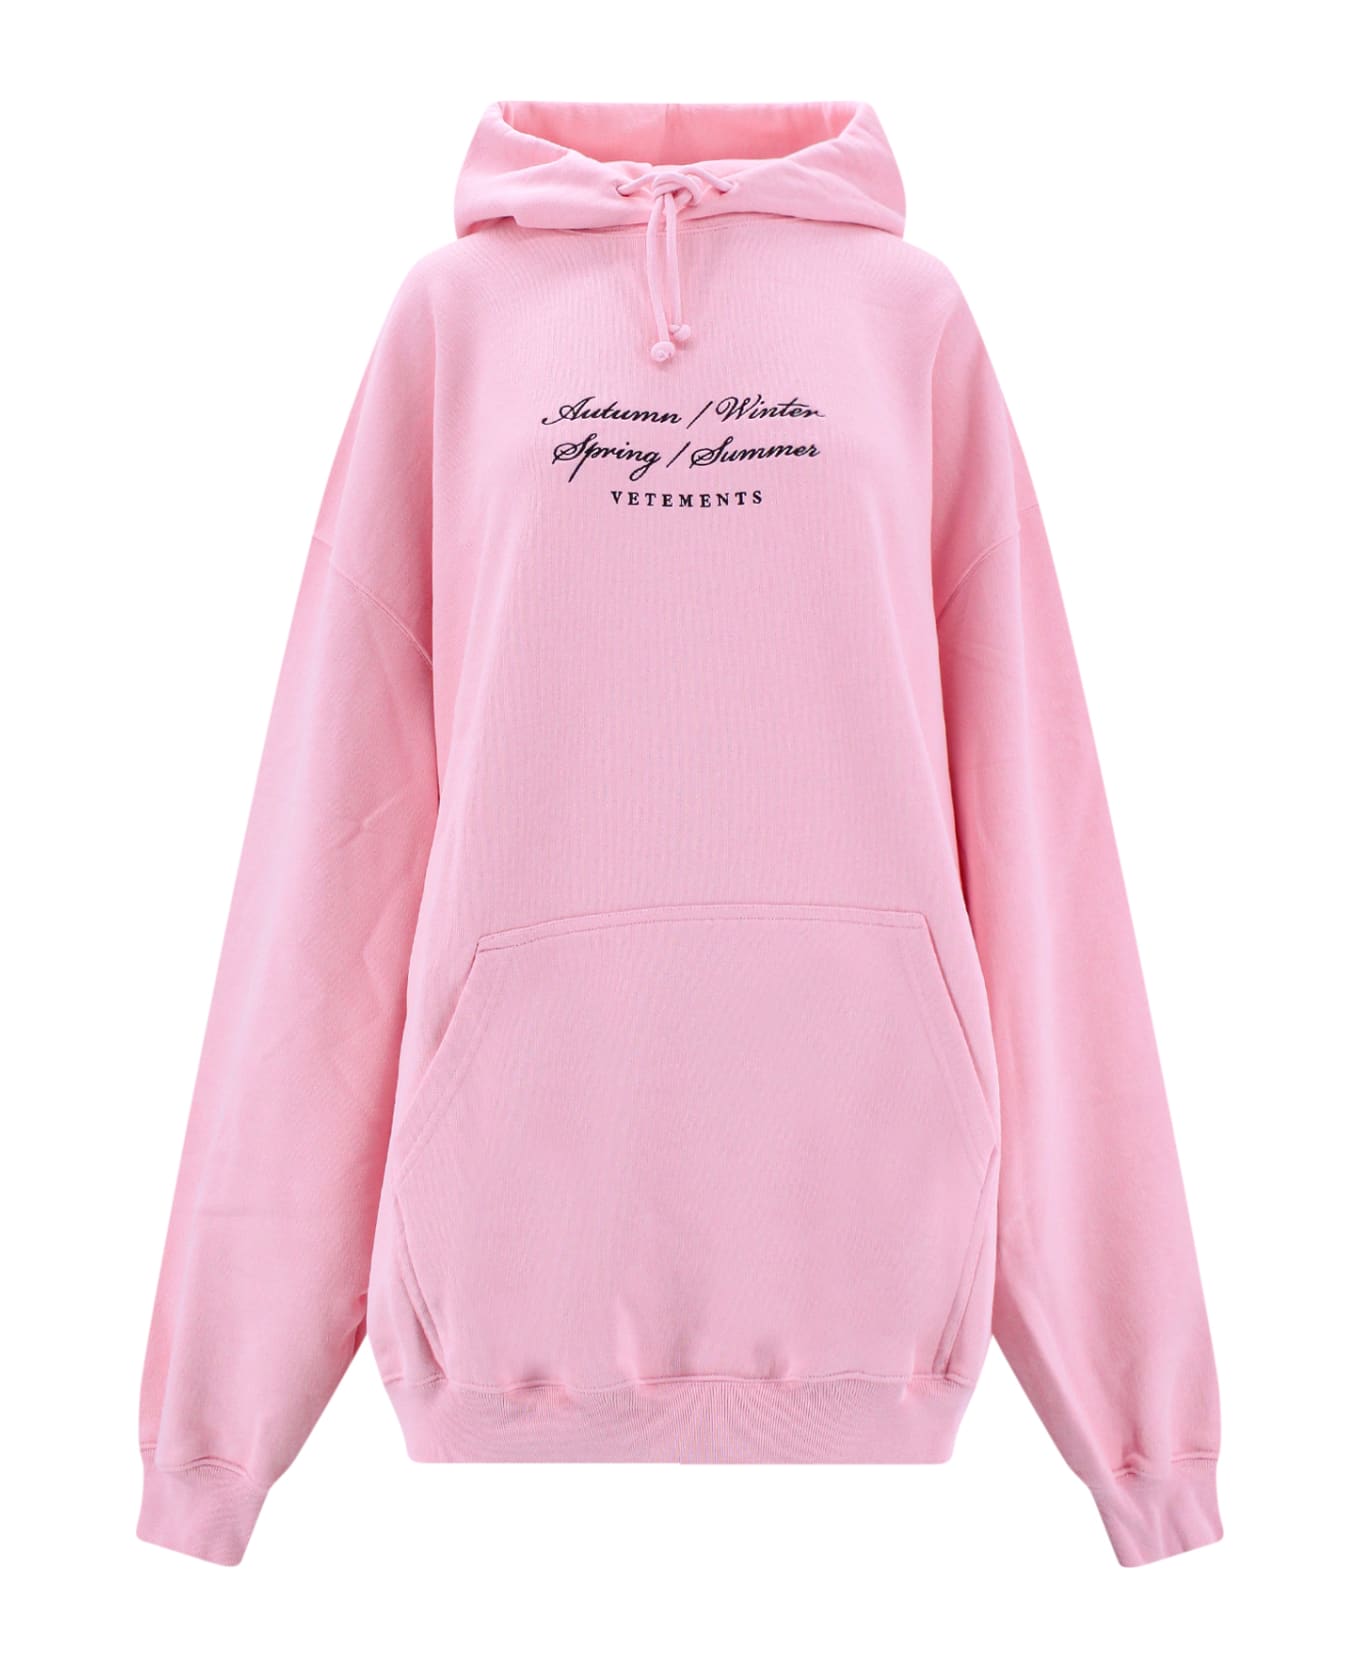 VETEMENTS Sweatshirt - Pink